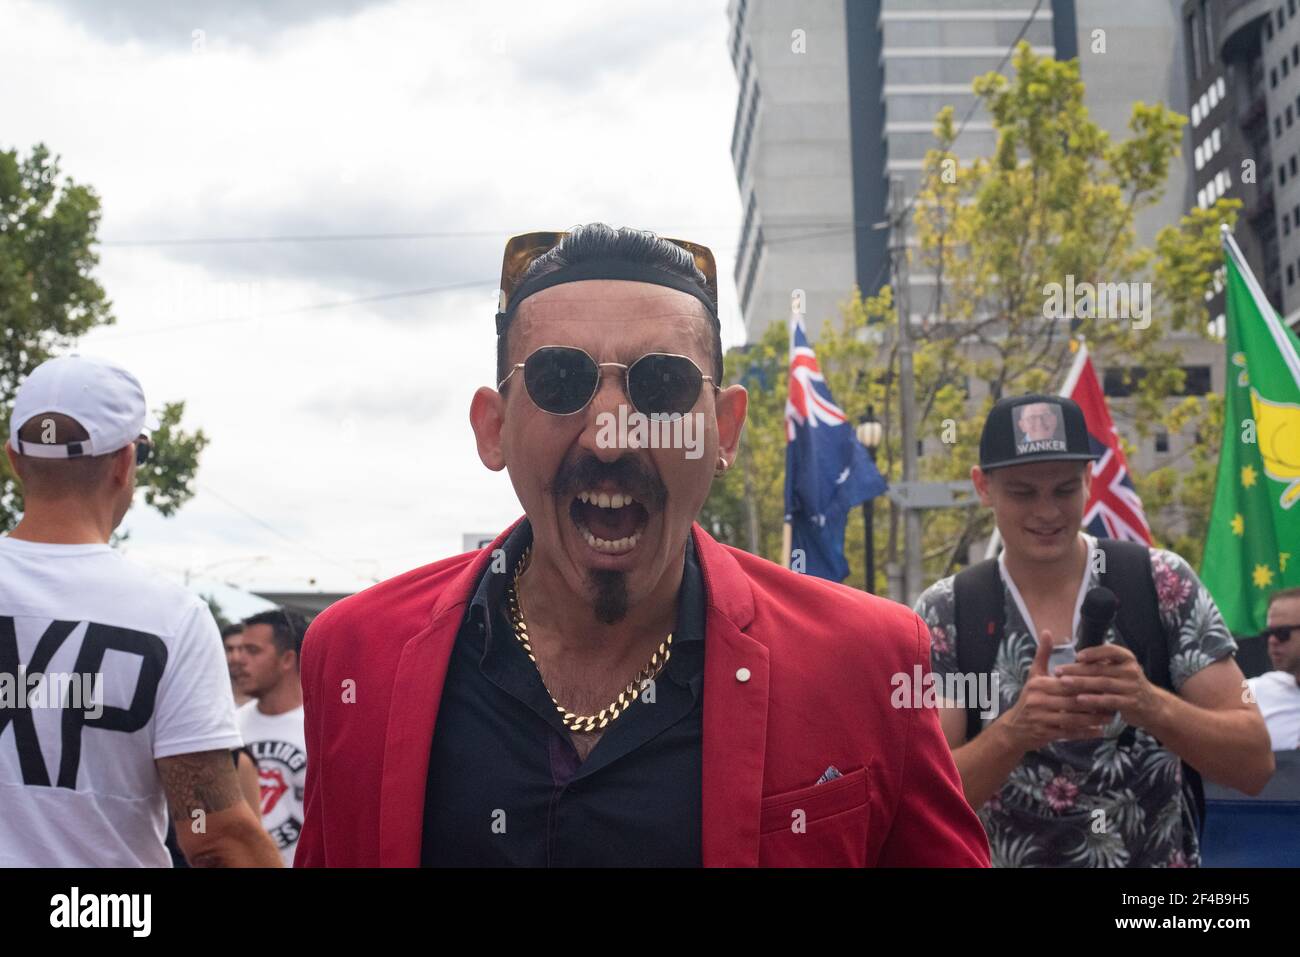 Melbourne, Australien. März 2021, 20th. Ein lautstarker Protestler ruft einen Gesang bei einer weltweiten Kundgebung für Freiheit gegen die COVID-19-Impfung auf. März 20, Melbourne, Australien. Quelle: Jay Kogler/Alamy Live News Stockfoto